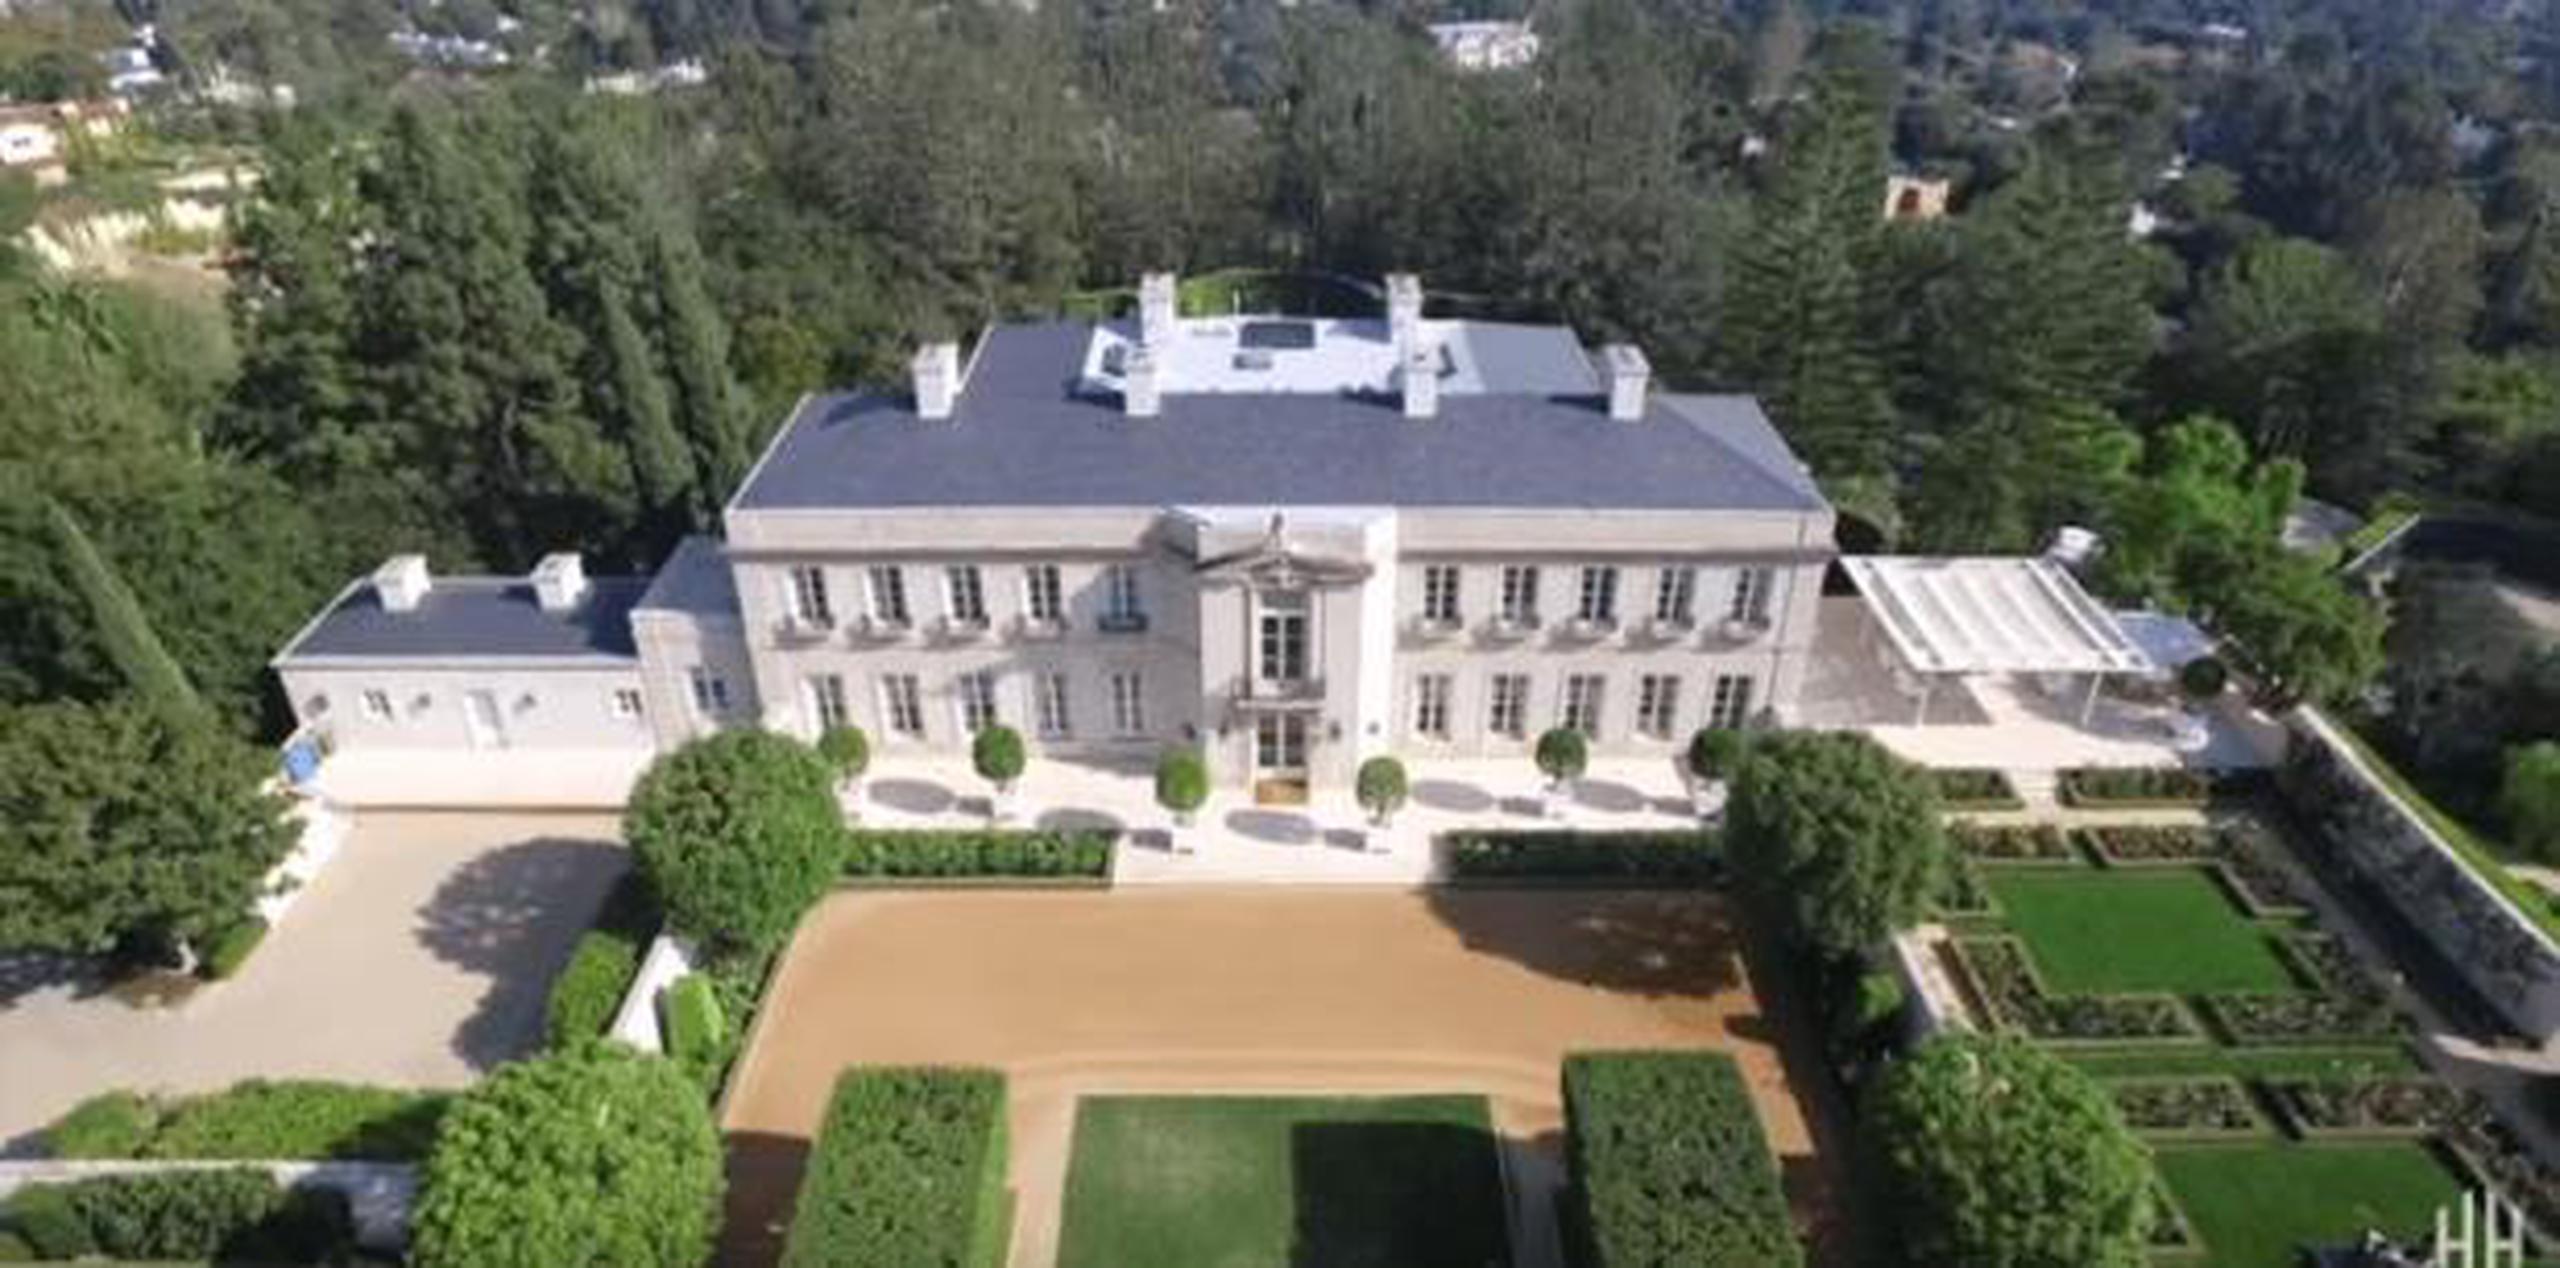 La propiedad contiene un castillo estilo neoclásico francés de 2,323 metros cuadrados sobre un terreno de 4 hectáreas en el barrio de Bel Air. (Captura)